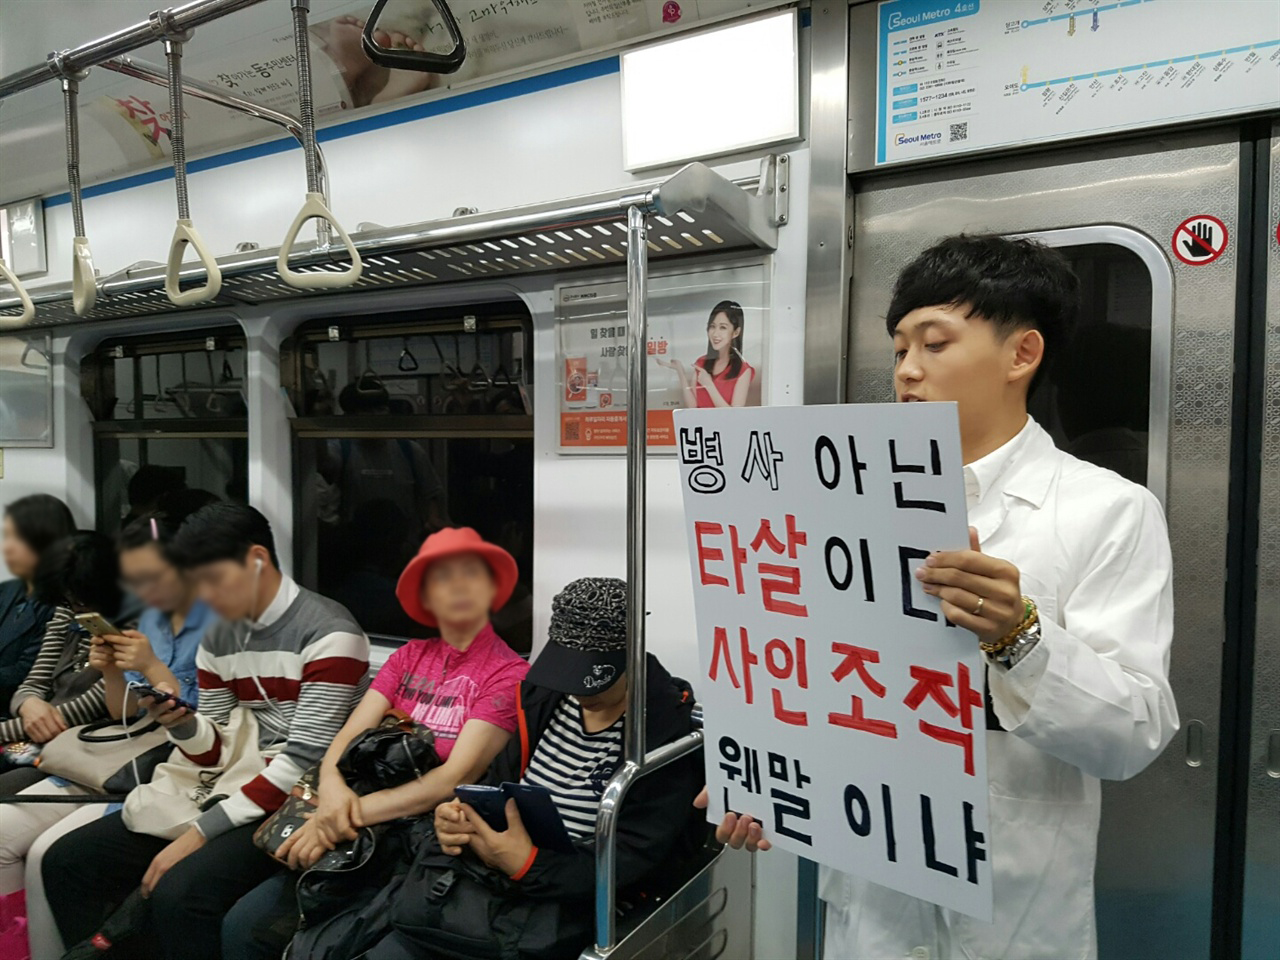 김지석 학생이 피켓을 들고 발언을 하고 있습니다.